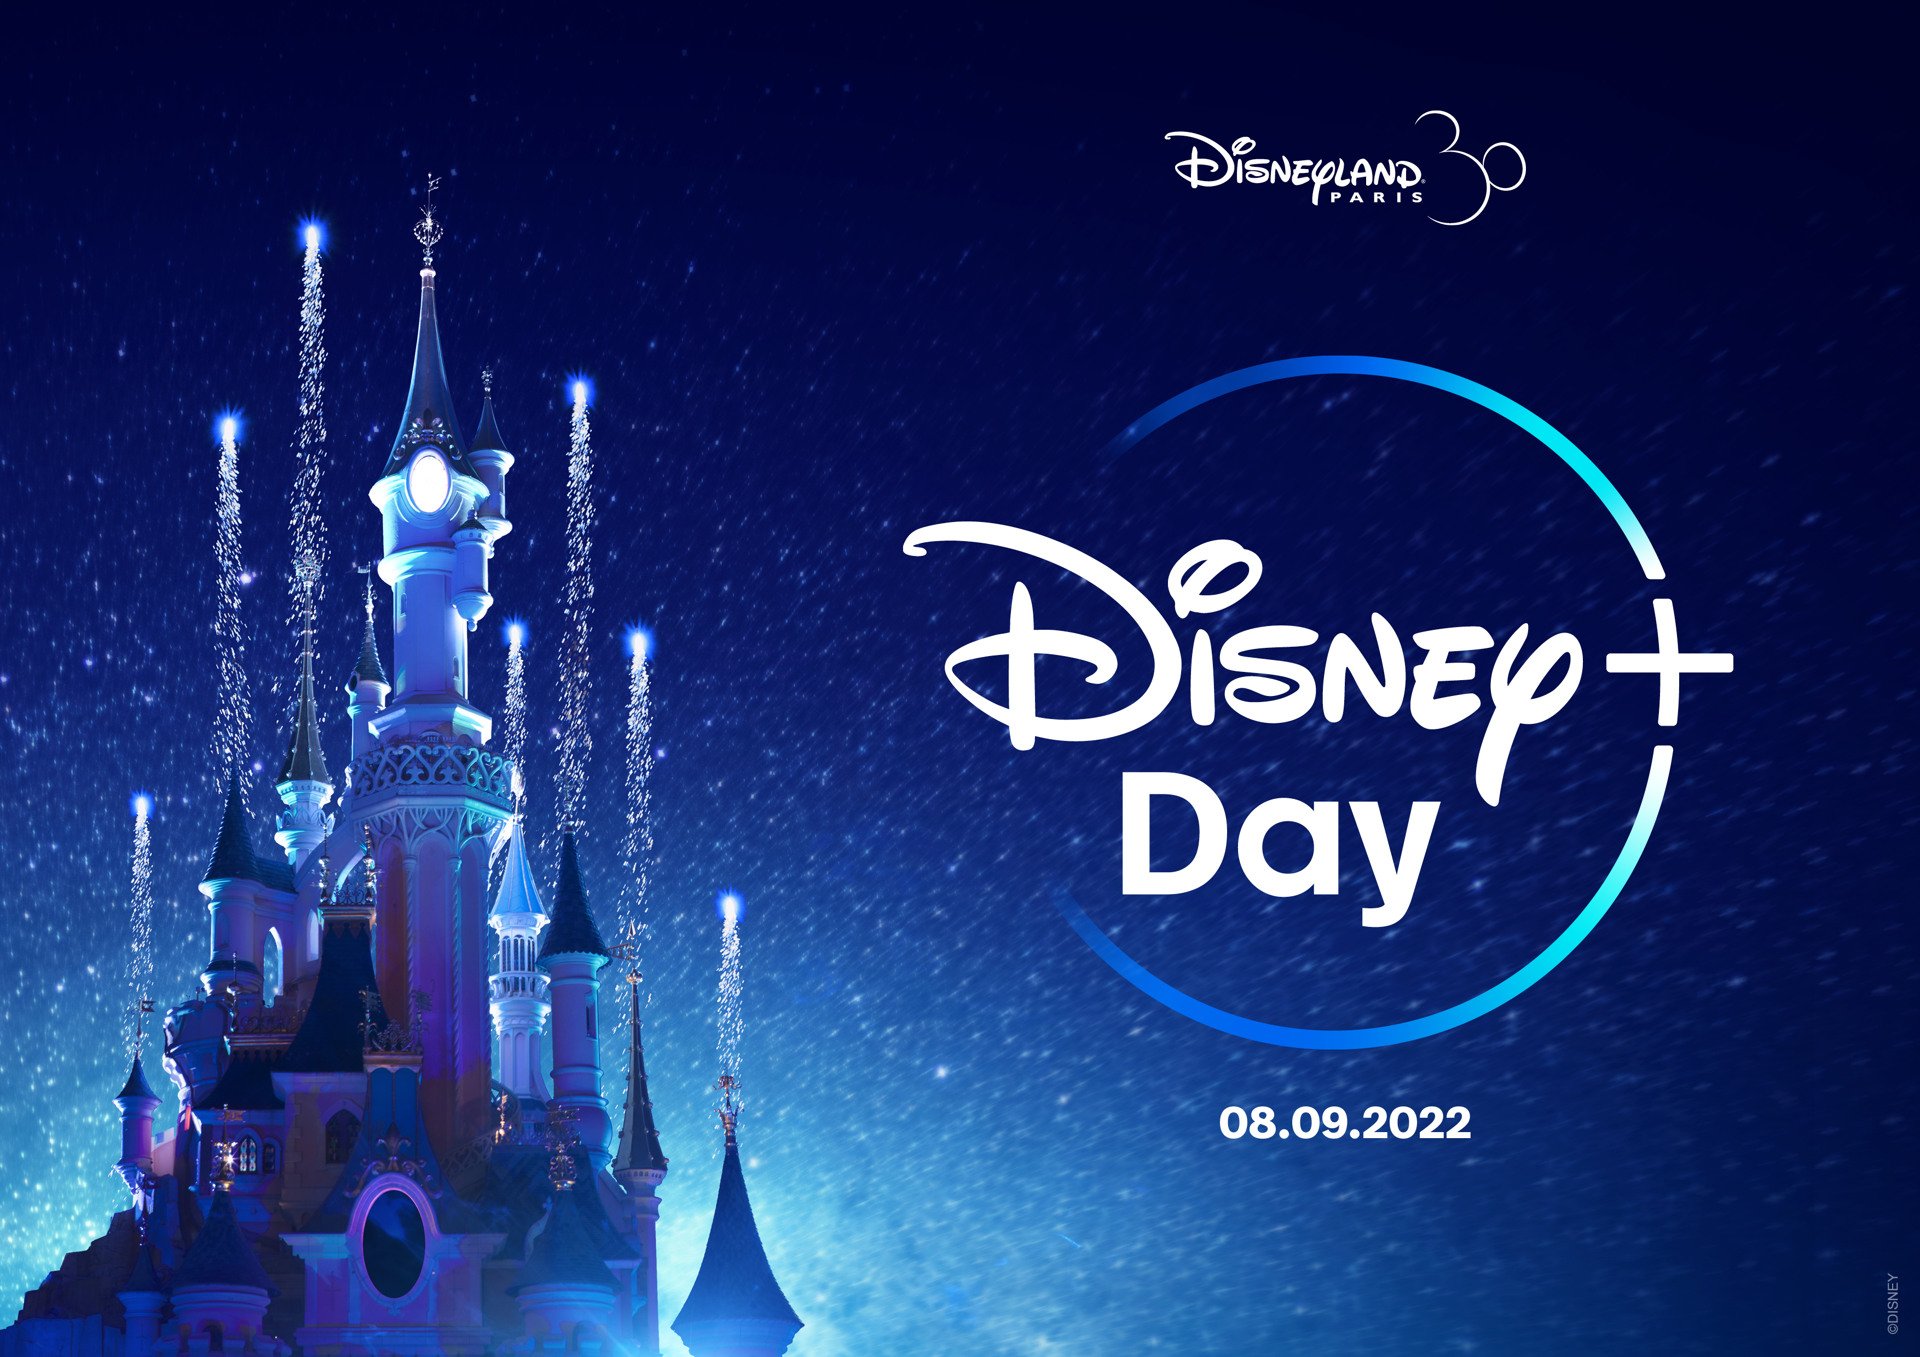 Disney+ Day im Disneyland Paris am 8. September 2022 wird wieder